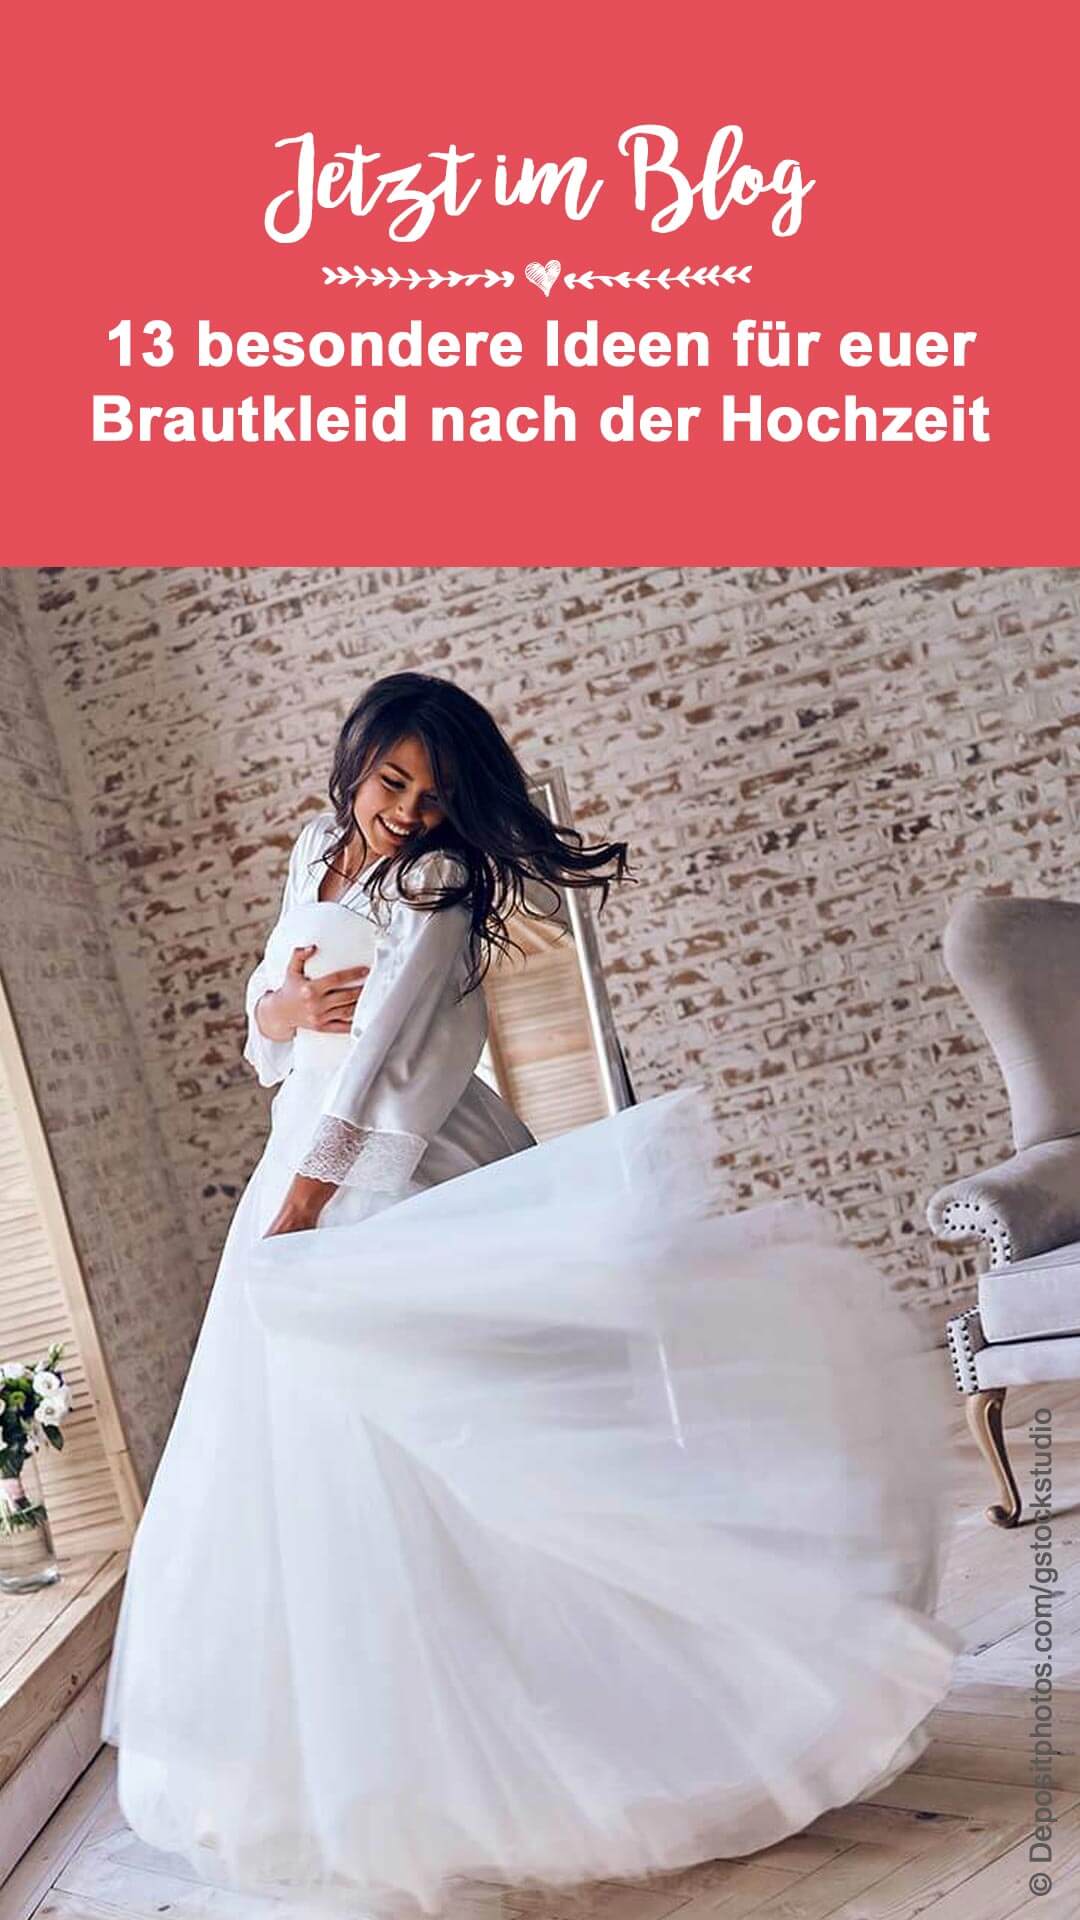 Was machen mit Brautkleid?